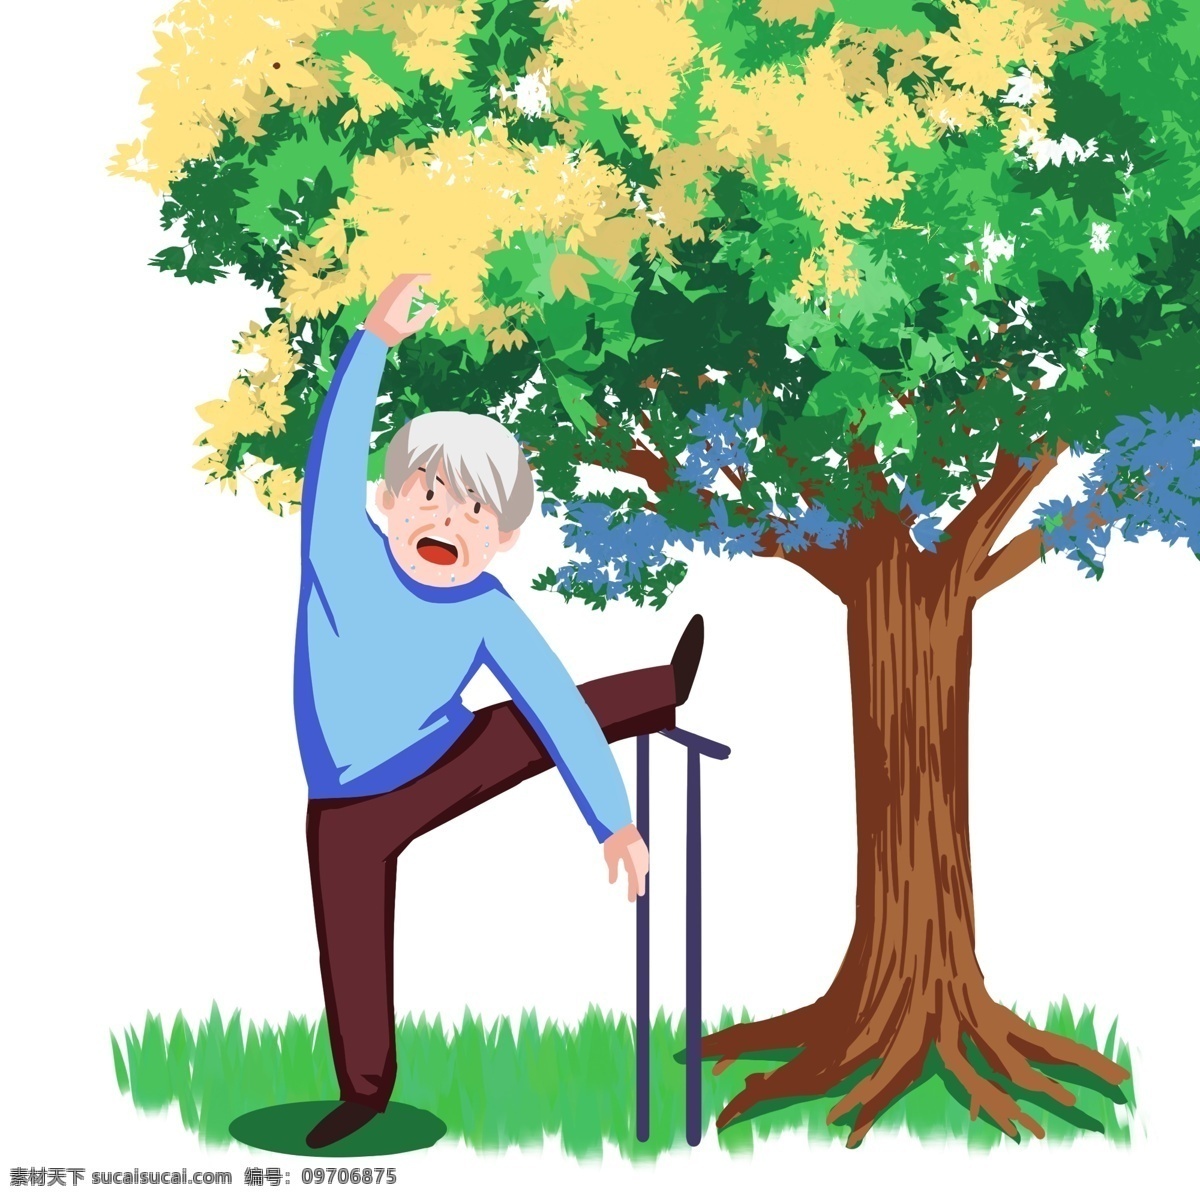 养生 大爷 手绘 插画 大树 树干 棕色 蓝色的衣服 压腿 白头发 青青的草地 绿色的草地 锻炼